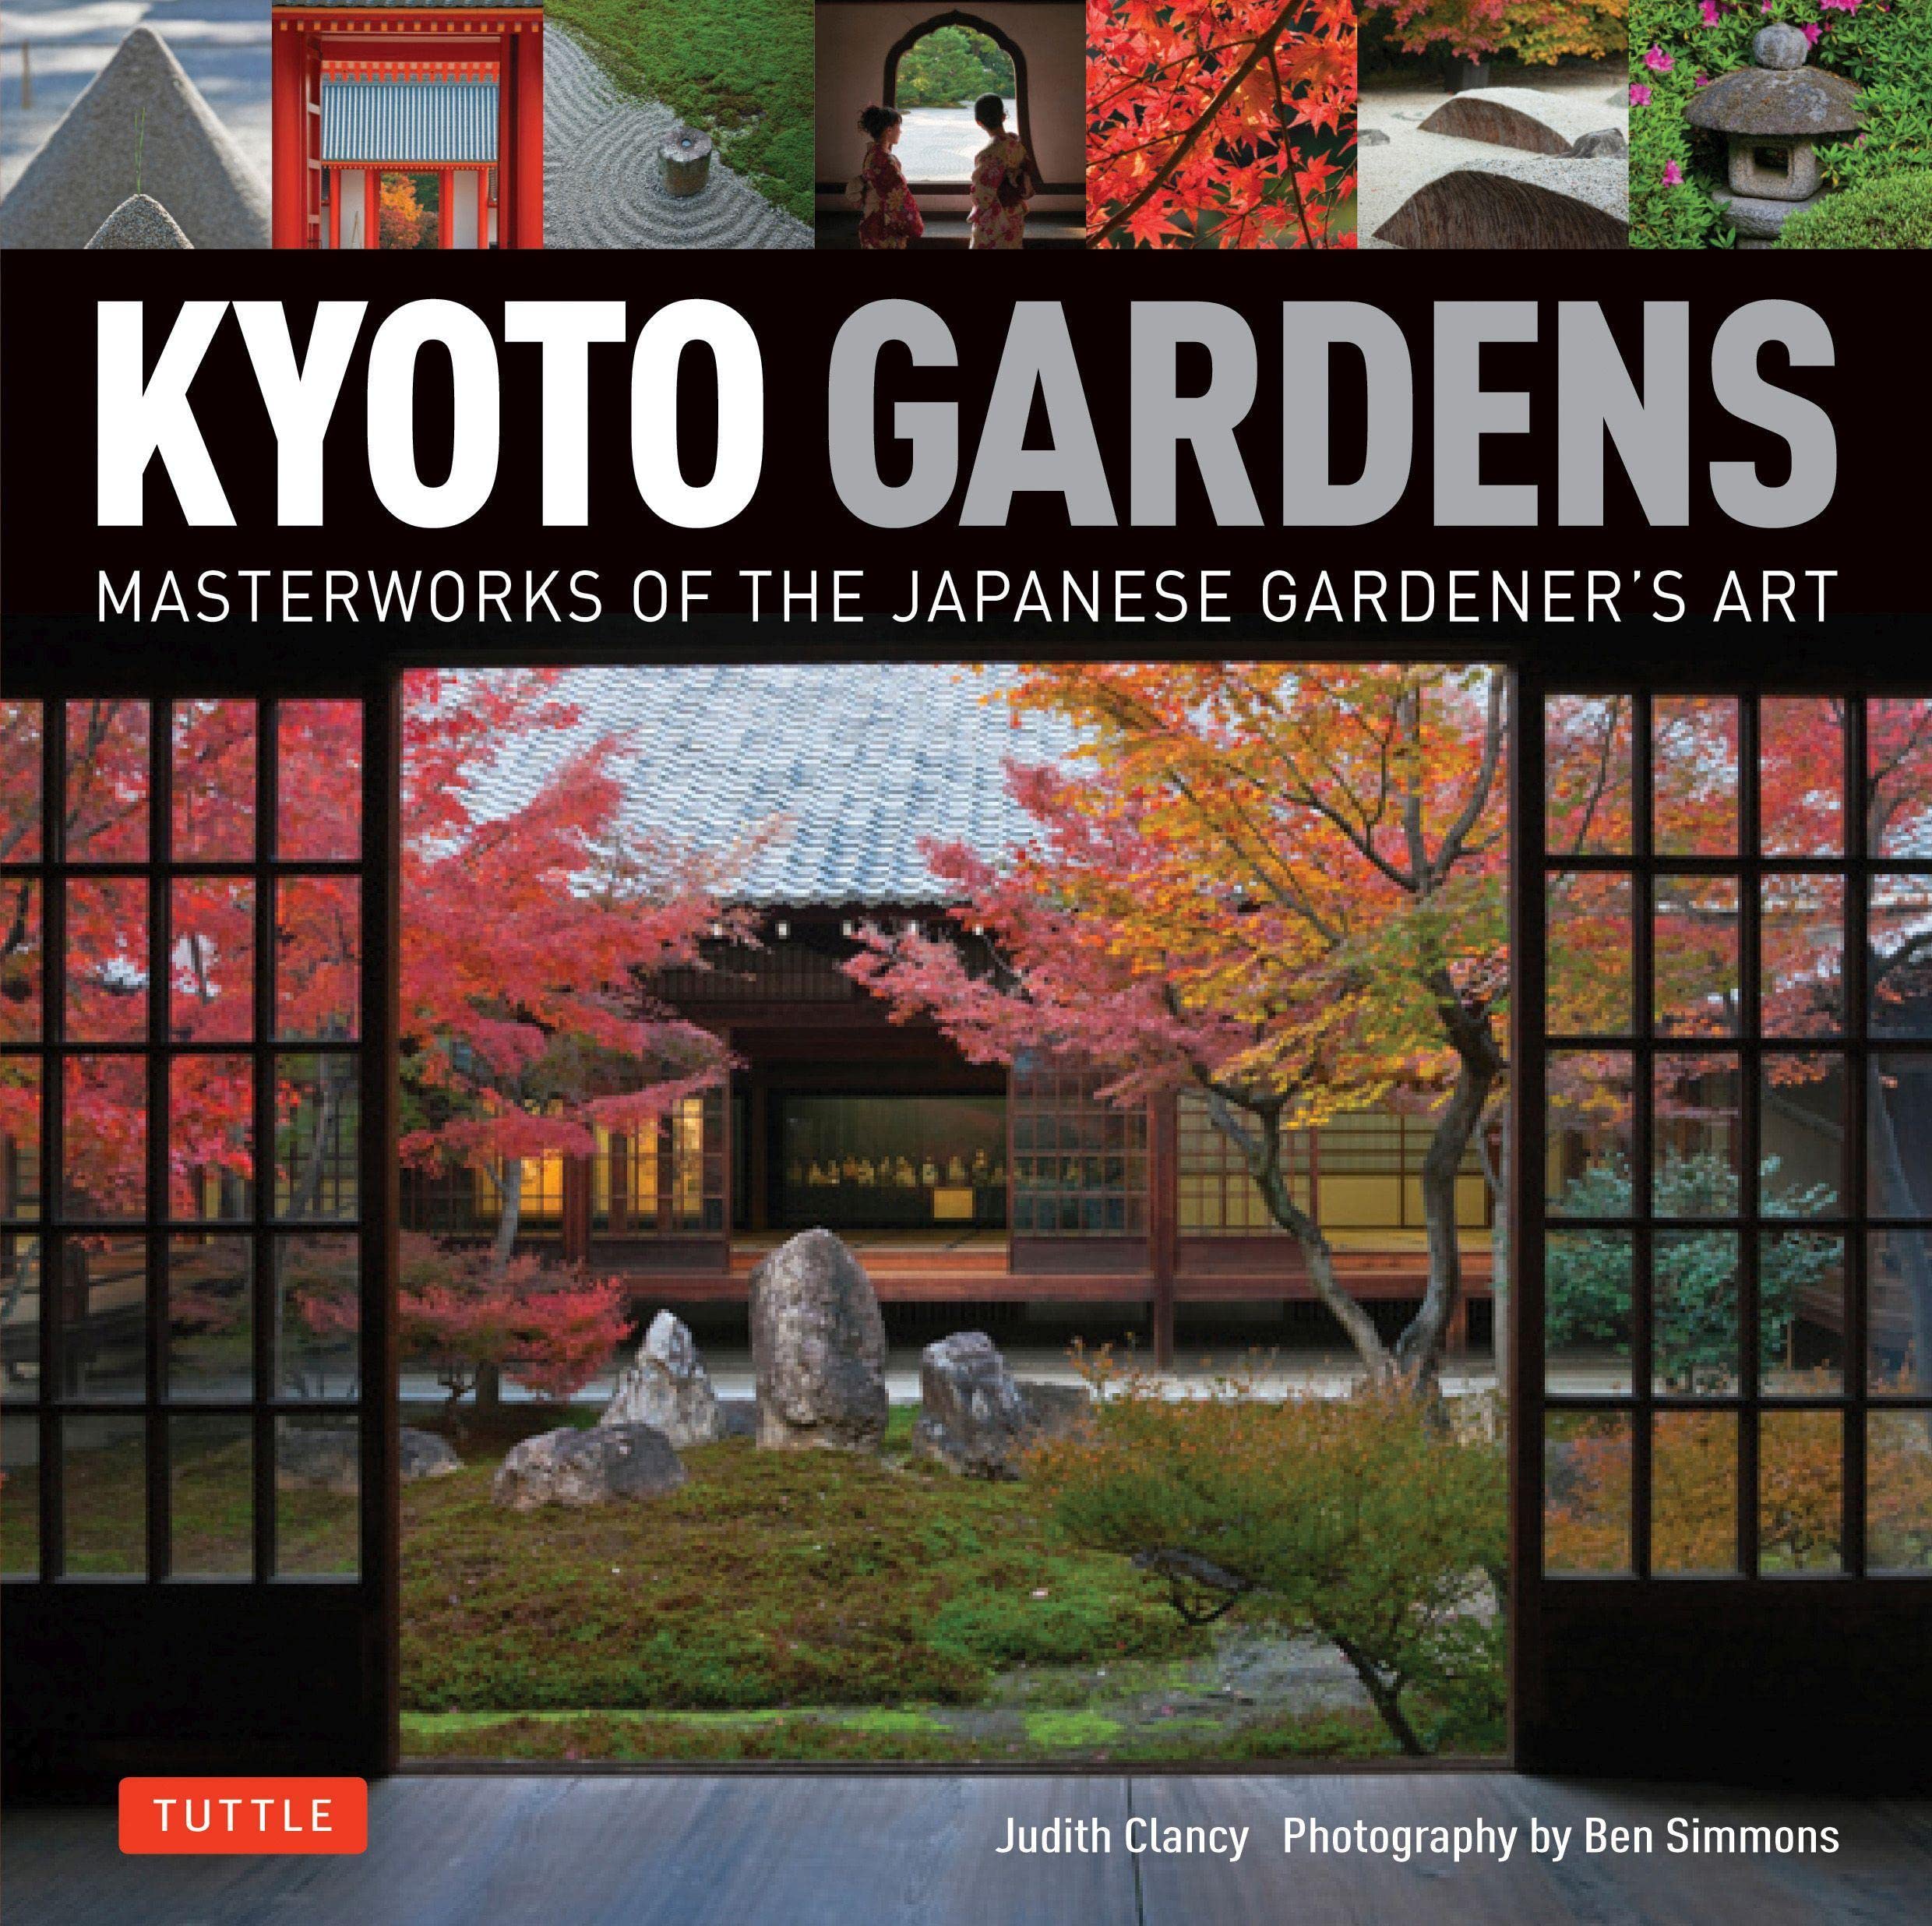 Kyoto gardens masterworks of the Japanese gardener's art